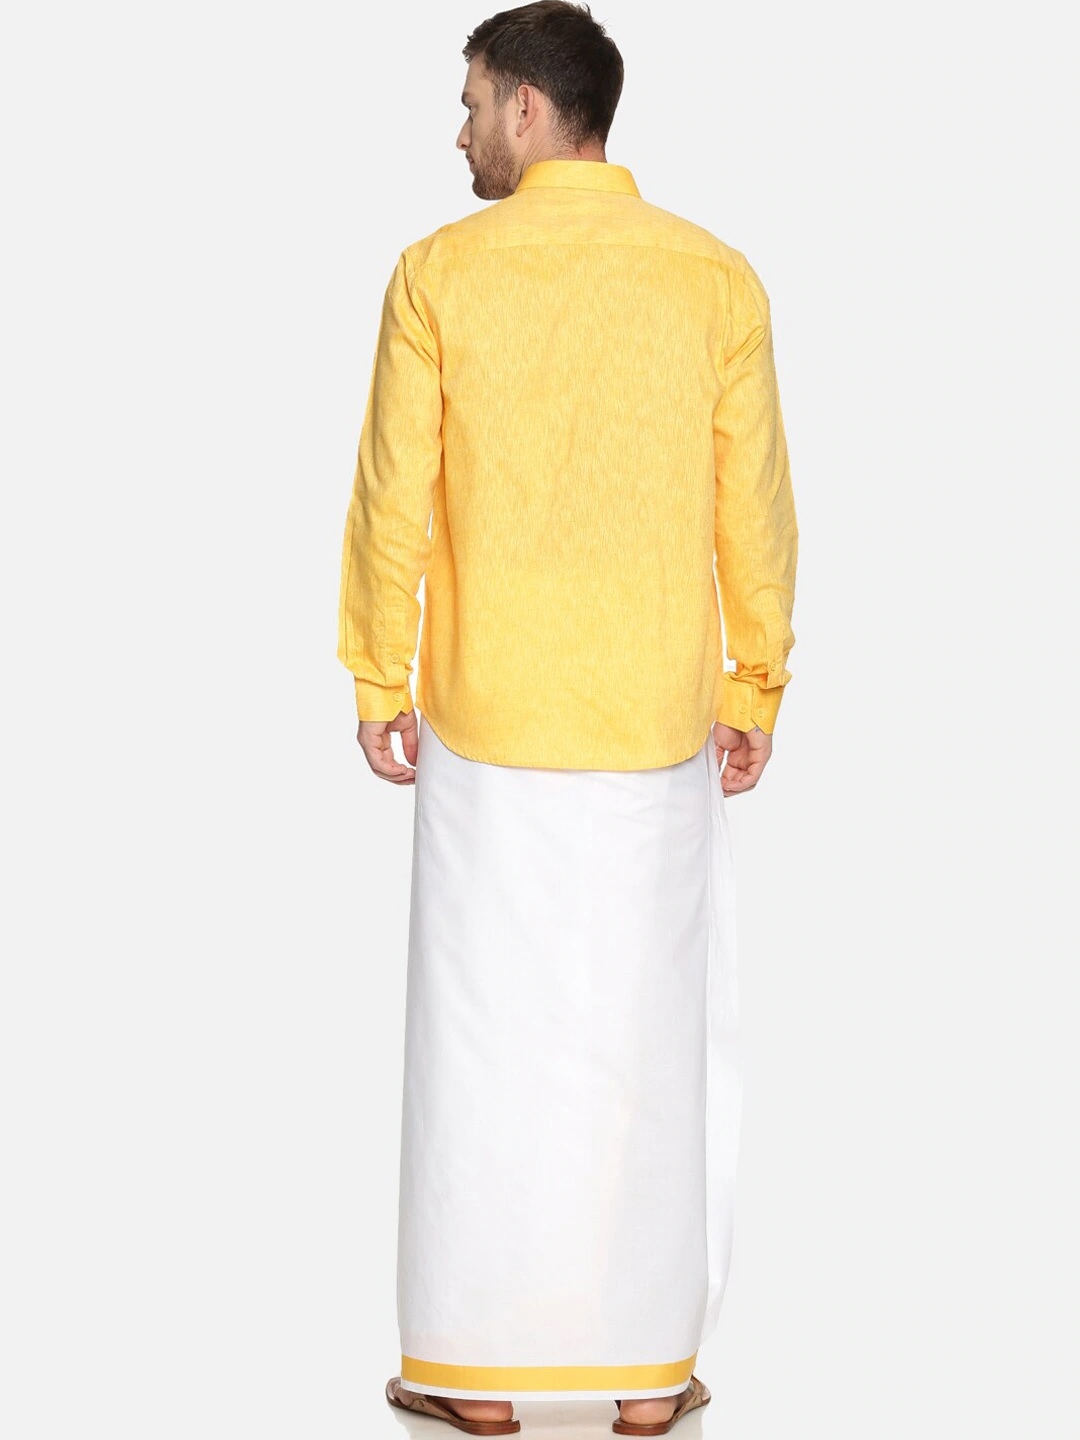 RAMRAJ COTTON Men Yellow White Solid Shirt with Dhoti